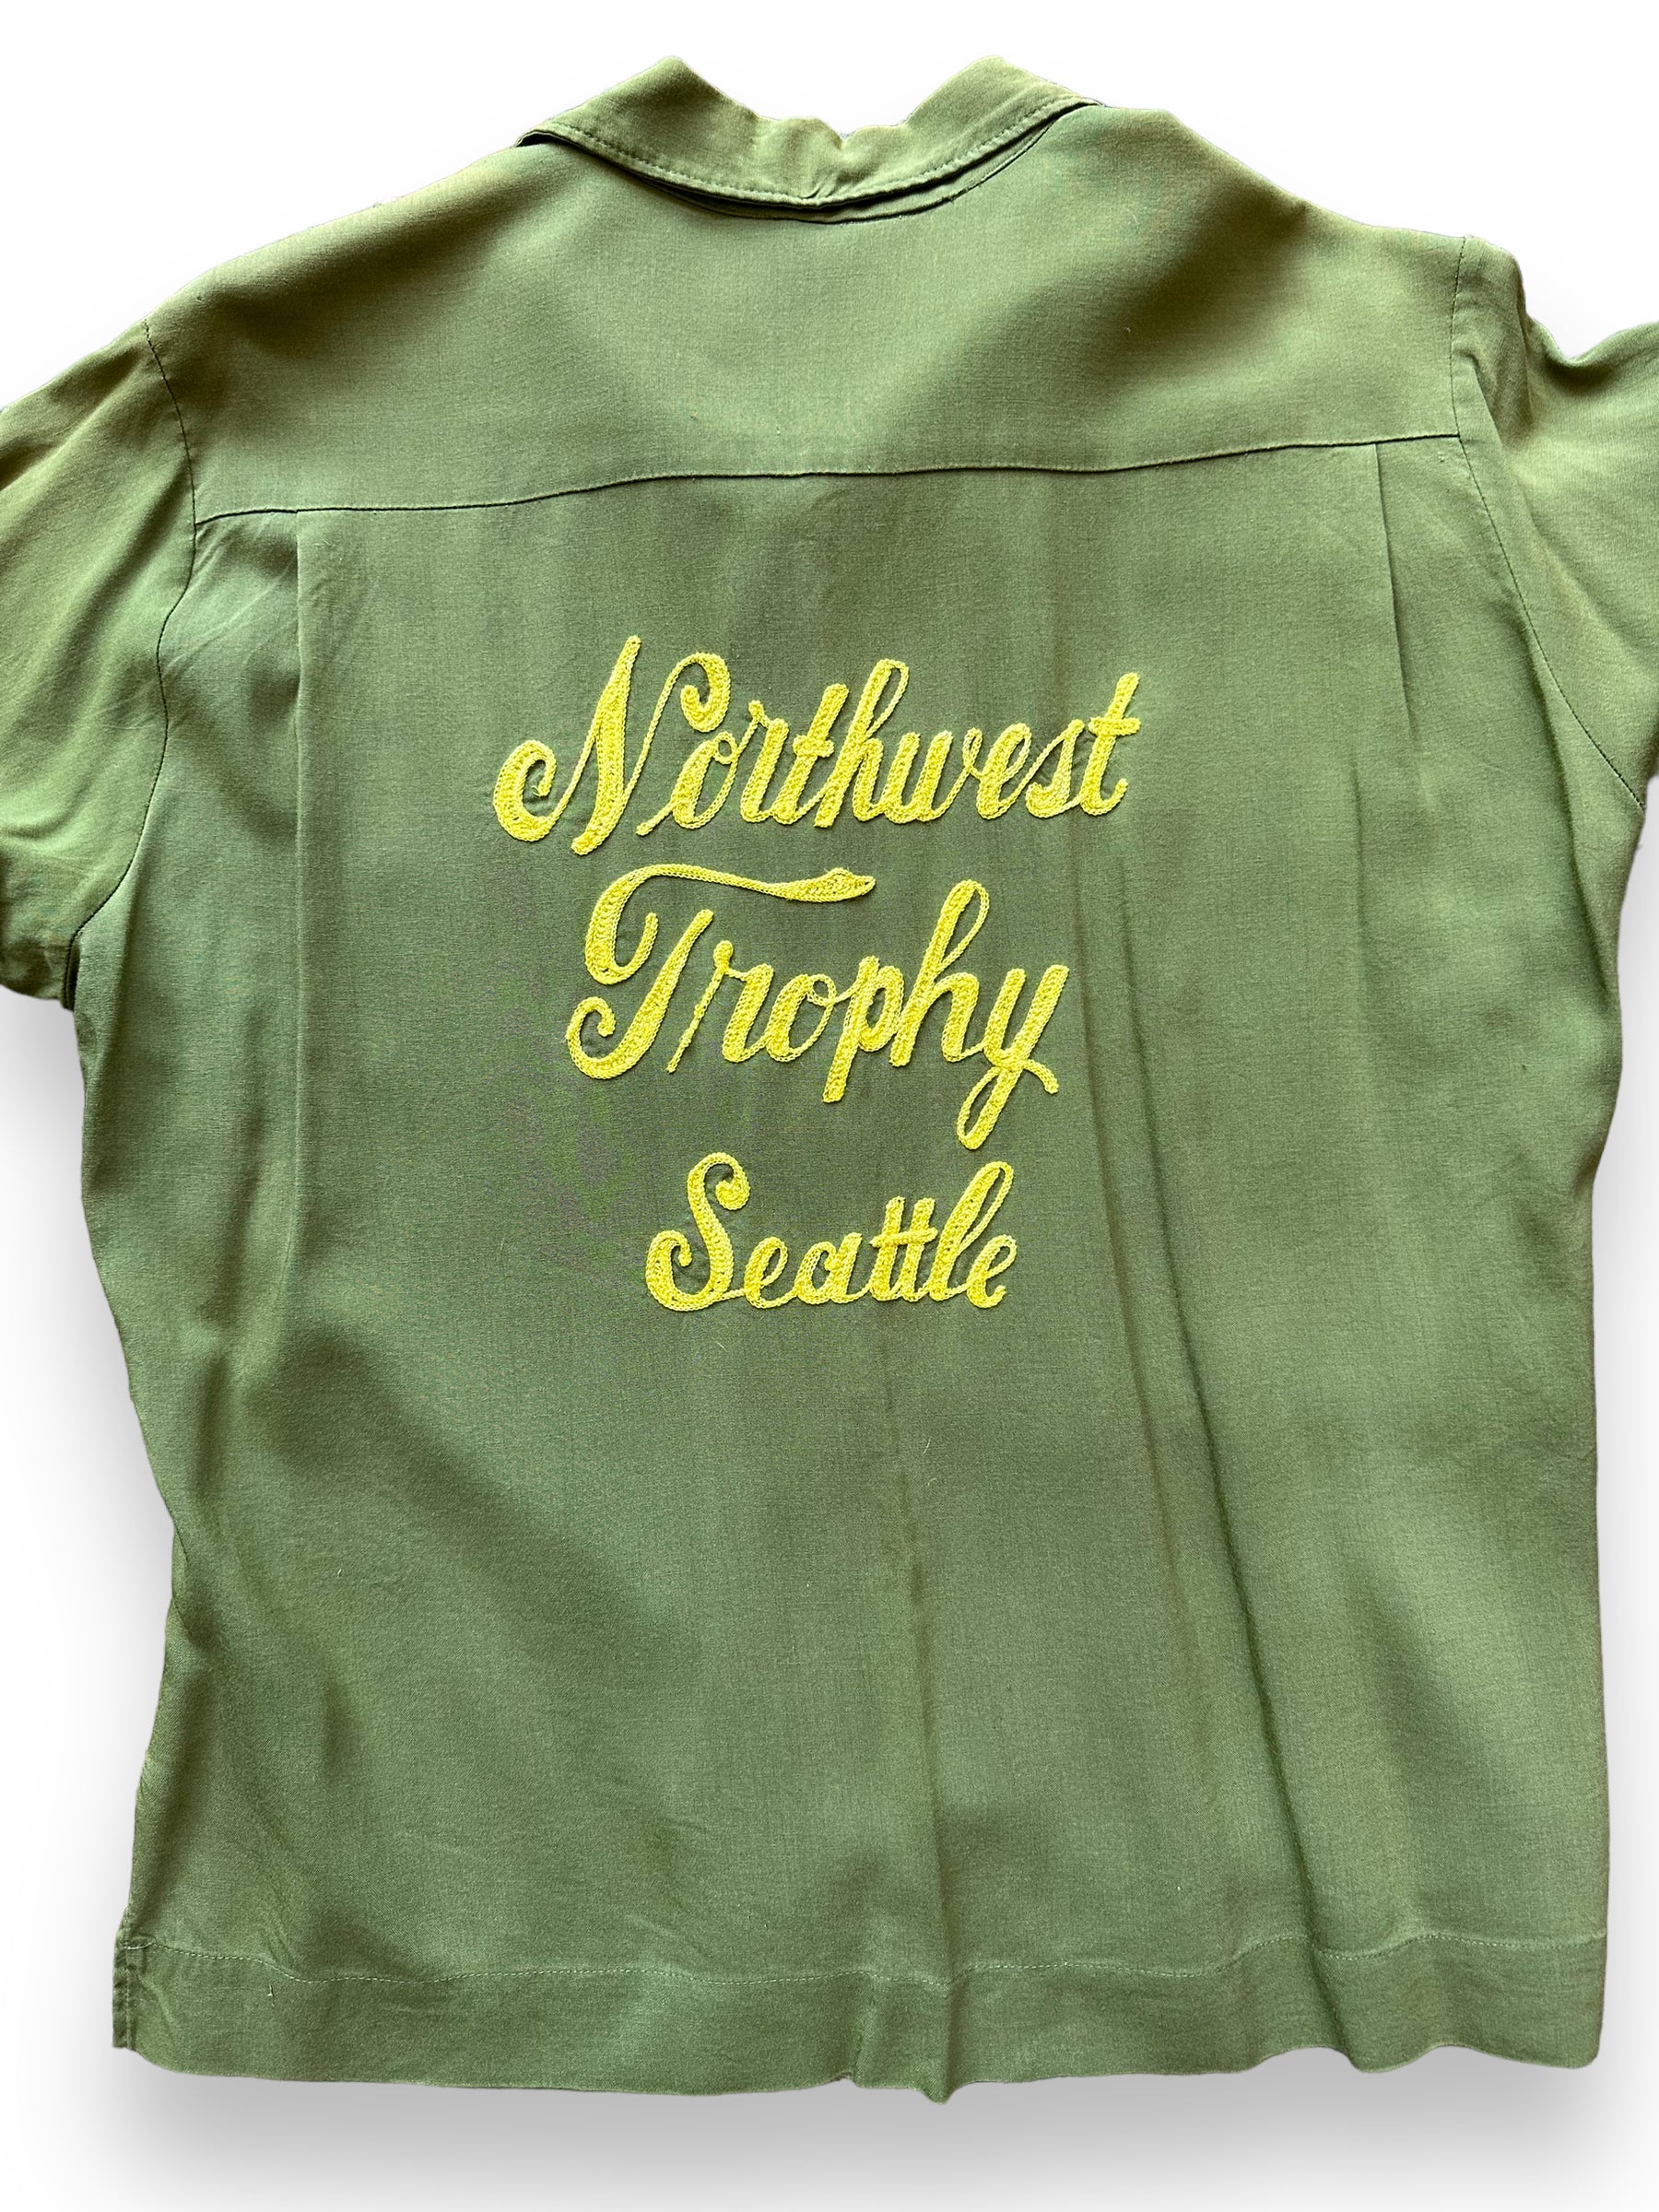 Rear Detail on Vintage Northwest Trophy Seattle Bowling Shirt SZ M | Vintage Bowling Shirt Seattle | Barn Owl Vintage Seattle